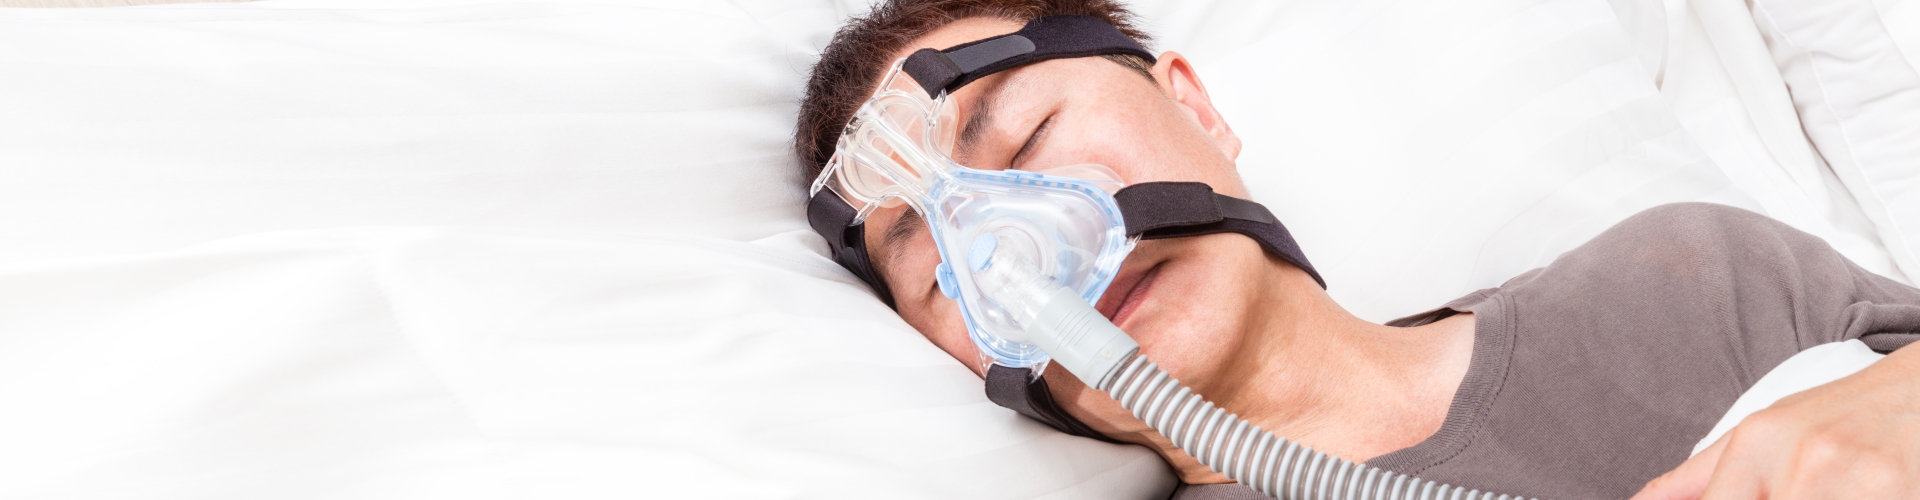 Obstructive Sleep Apnea - Treatment